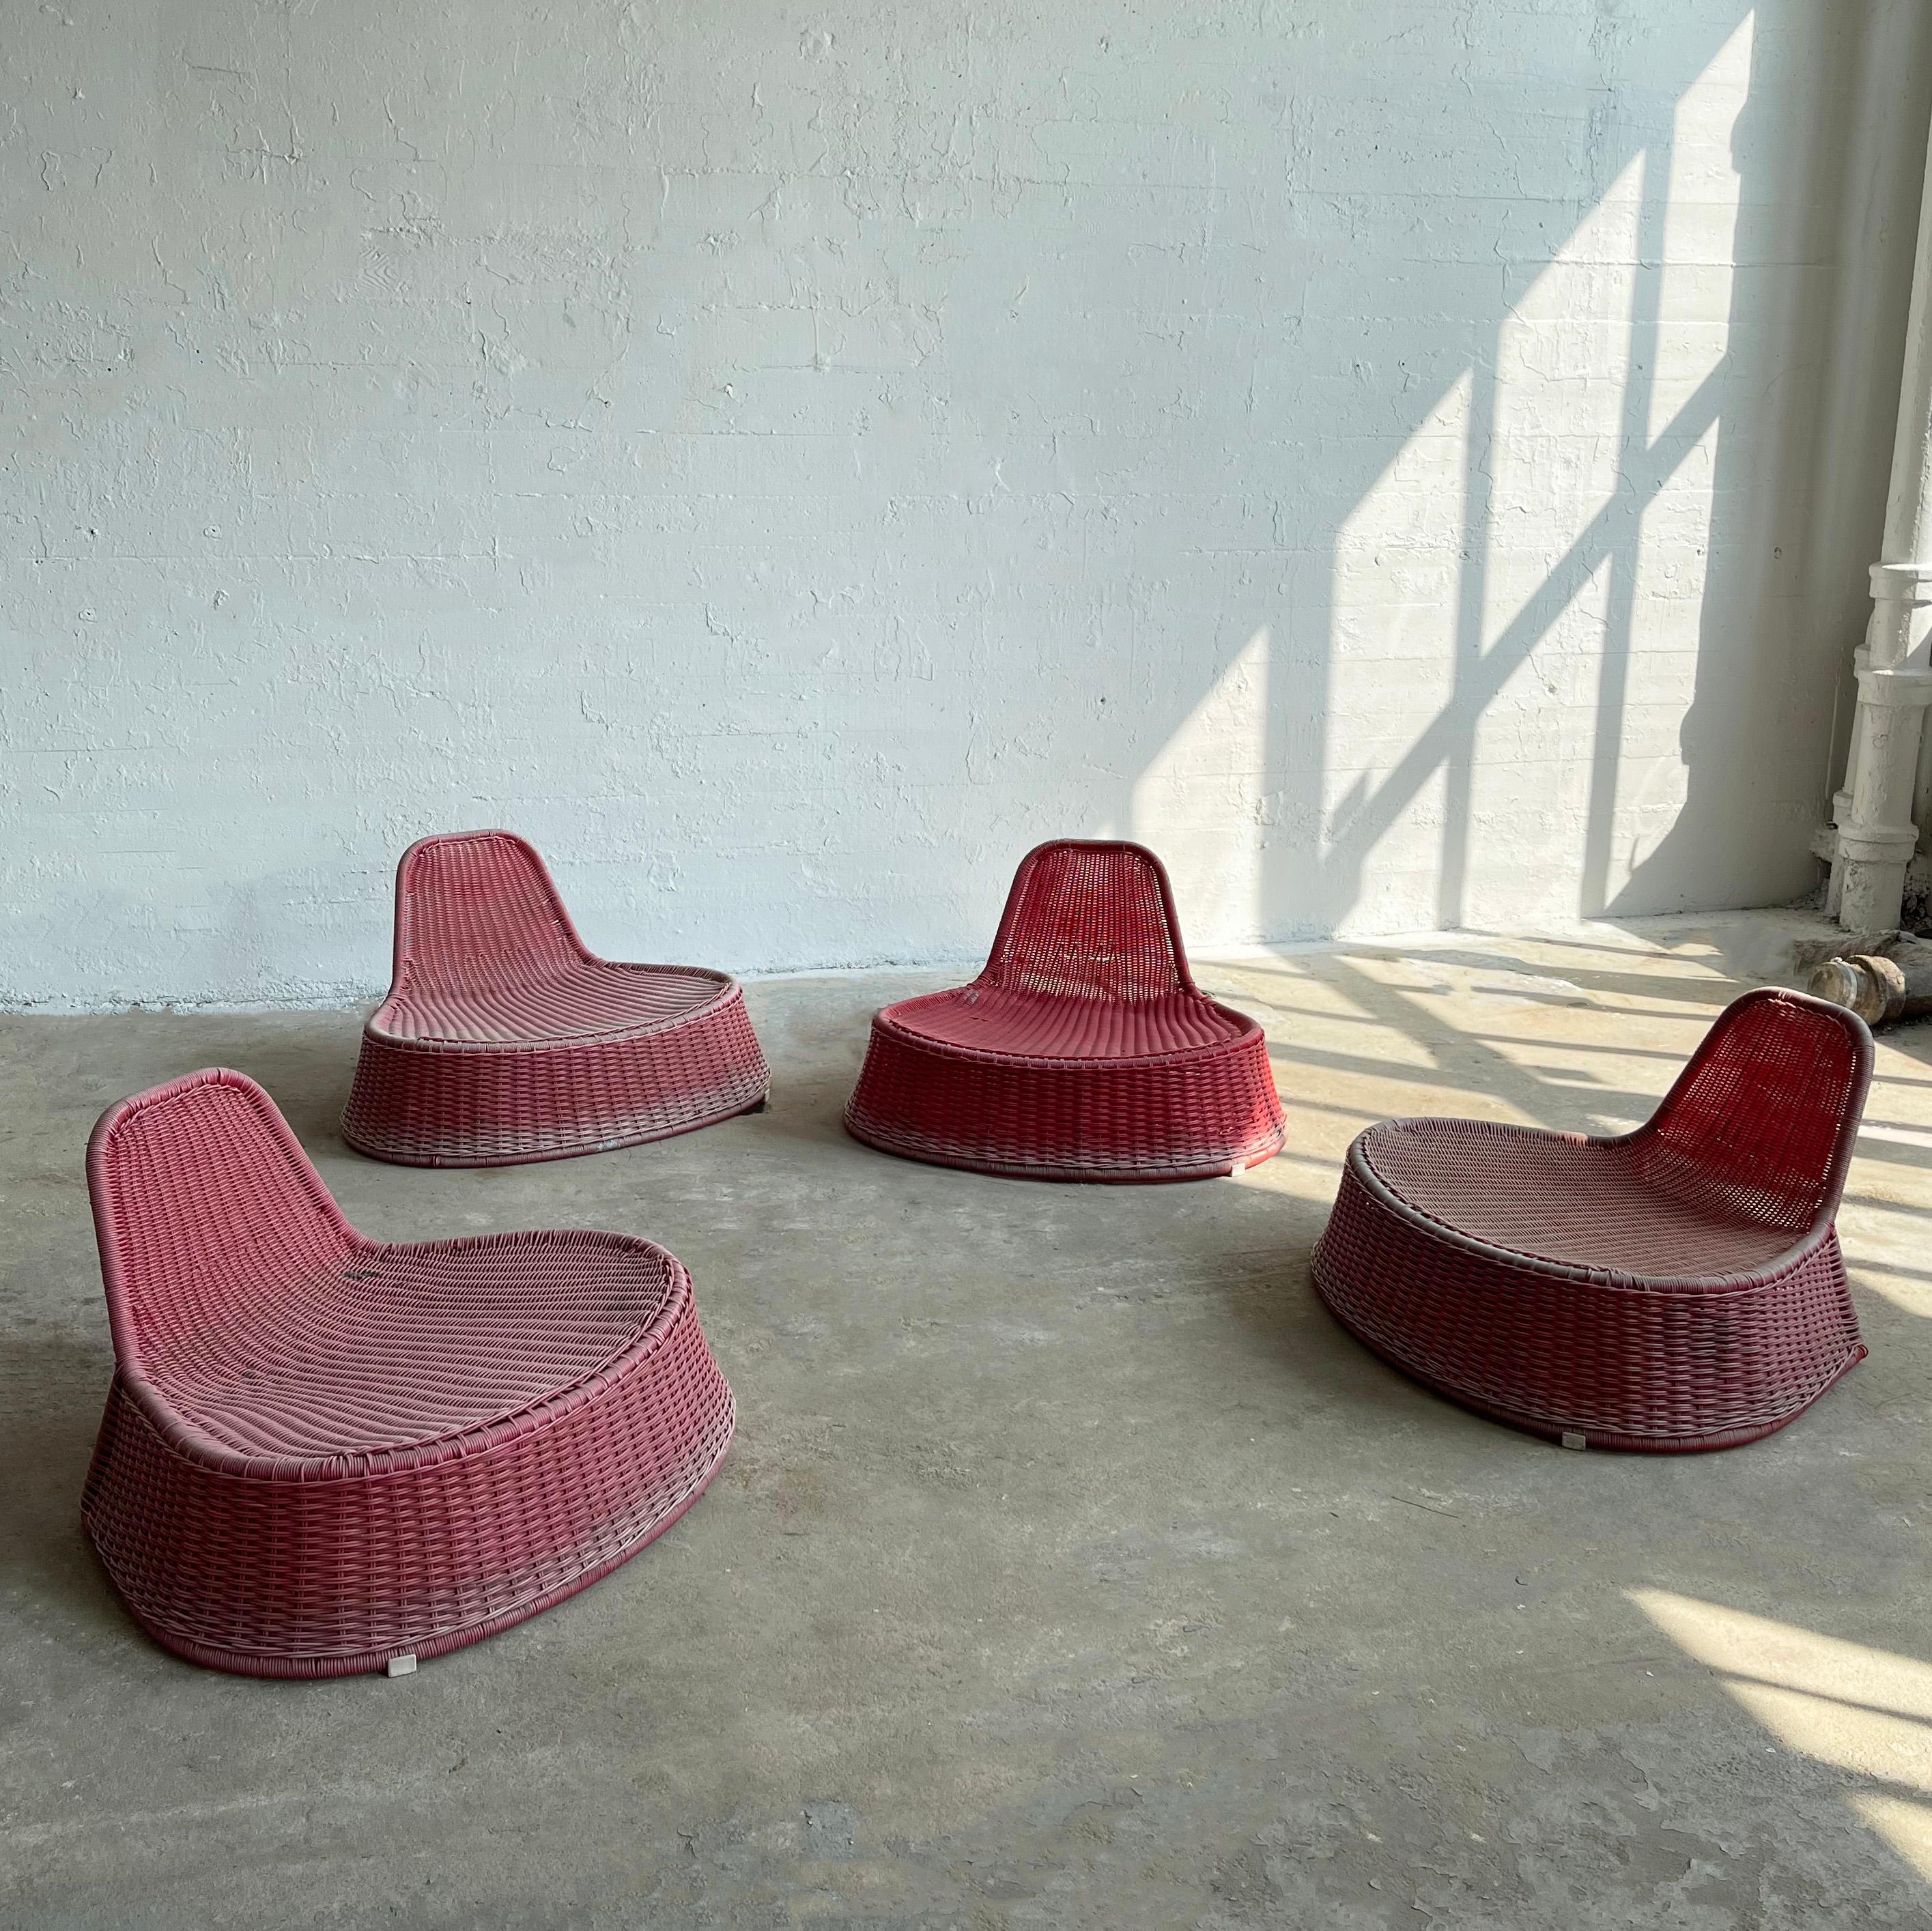 Ensemble de quatre chaises d'extérieur modernes et colorées, créées par la designer néerlandaise Monika Mulder pour Ikea vers les années 1990. Les formes organiques en rotin rose framboise et en plastique tressé sont intéressantes et ludiques, tant